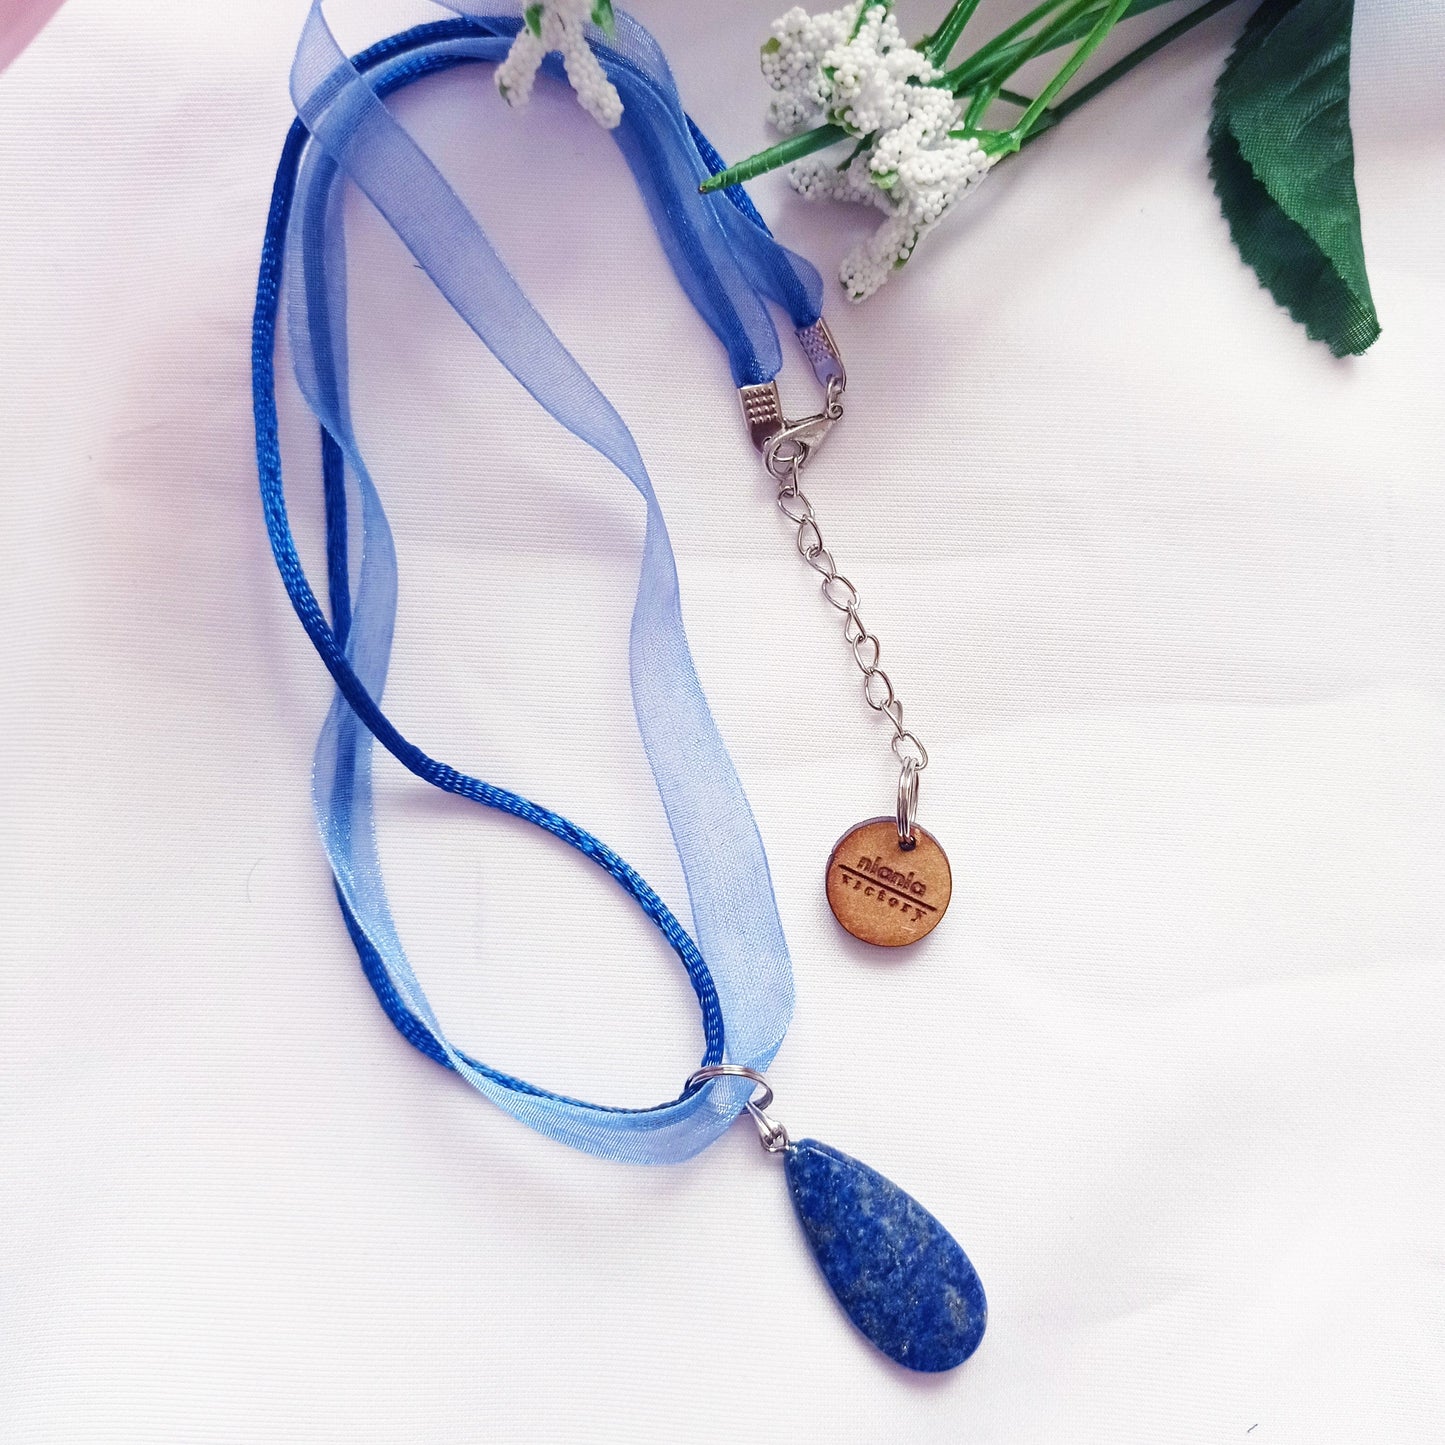 Lapis Lazuli Necklace, Blue Ribbon Necklace, Gemstone Necklace, Lapis Lazuli Pendant | by nlanlaVictory-0